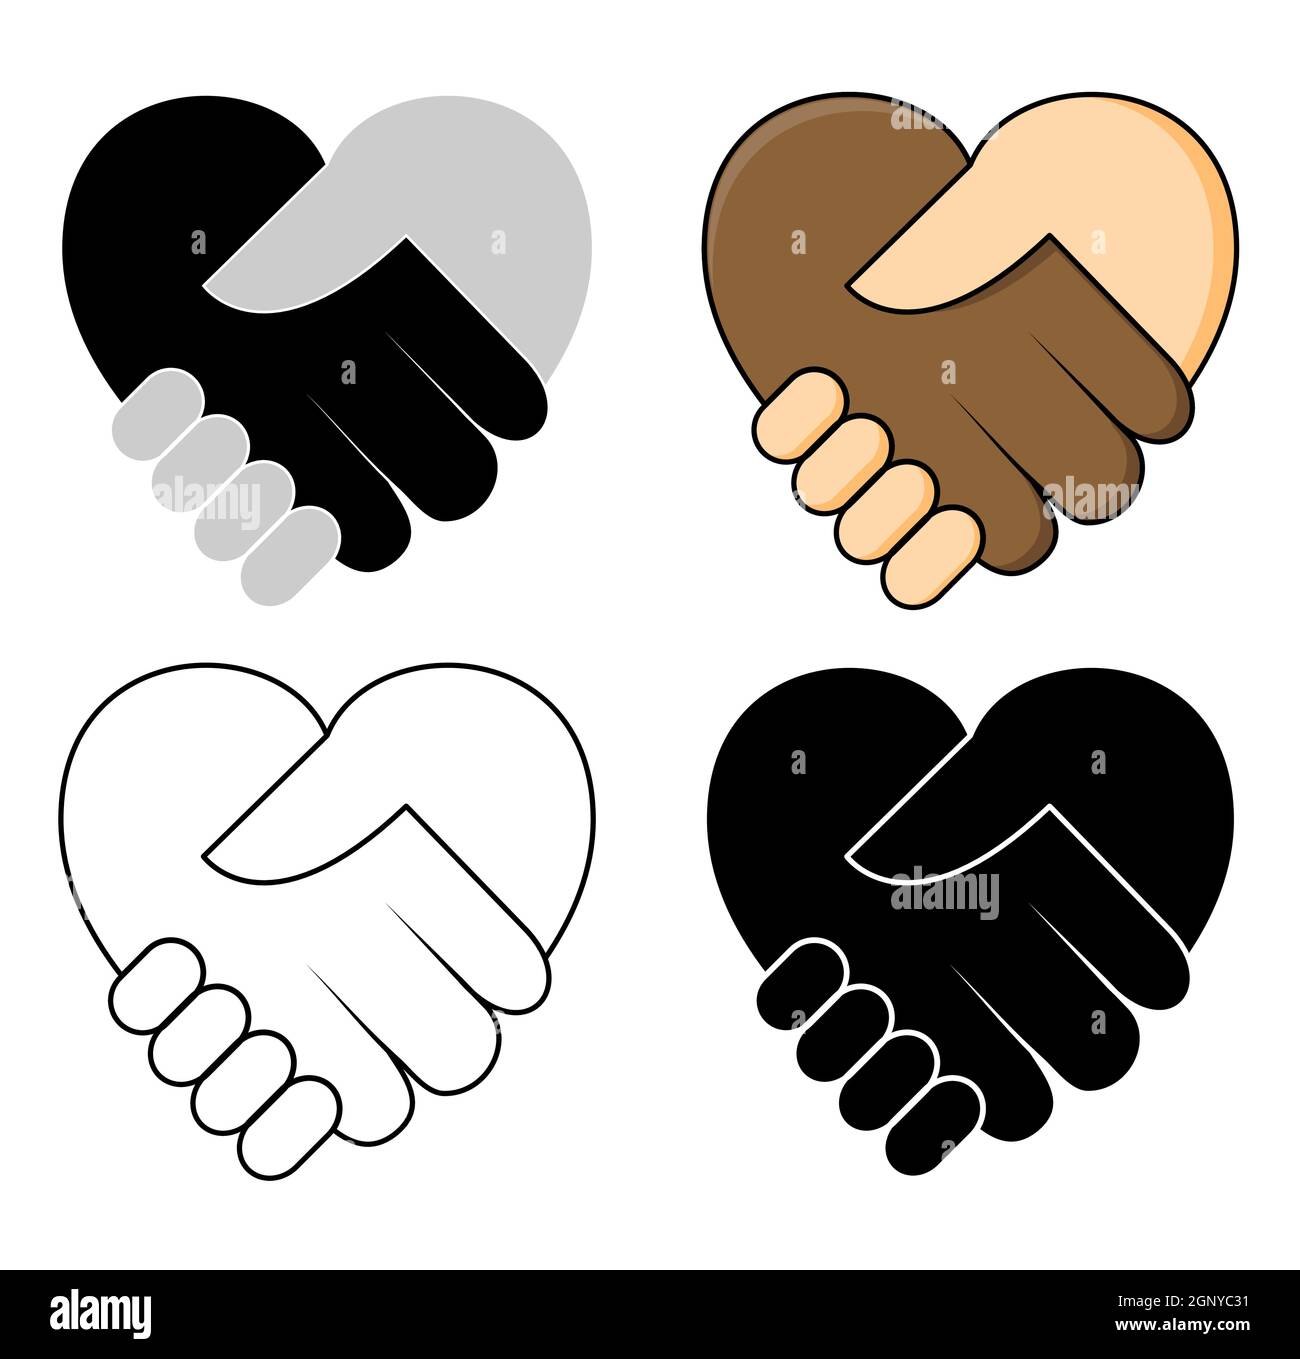 Schütteln Sie die Hand in Herzform - kein Rassismus Konzept Icon Set. Zwei Hände dunkle und schöne Haut in einem Handschlag. Ideal für Symbol der Toleranz oder Teamarbeit zwischen verschiedenen Ethnien. Vektordesign. Stock Vektor